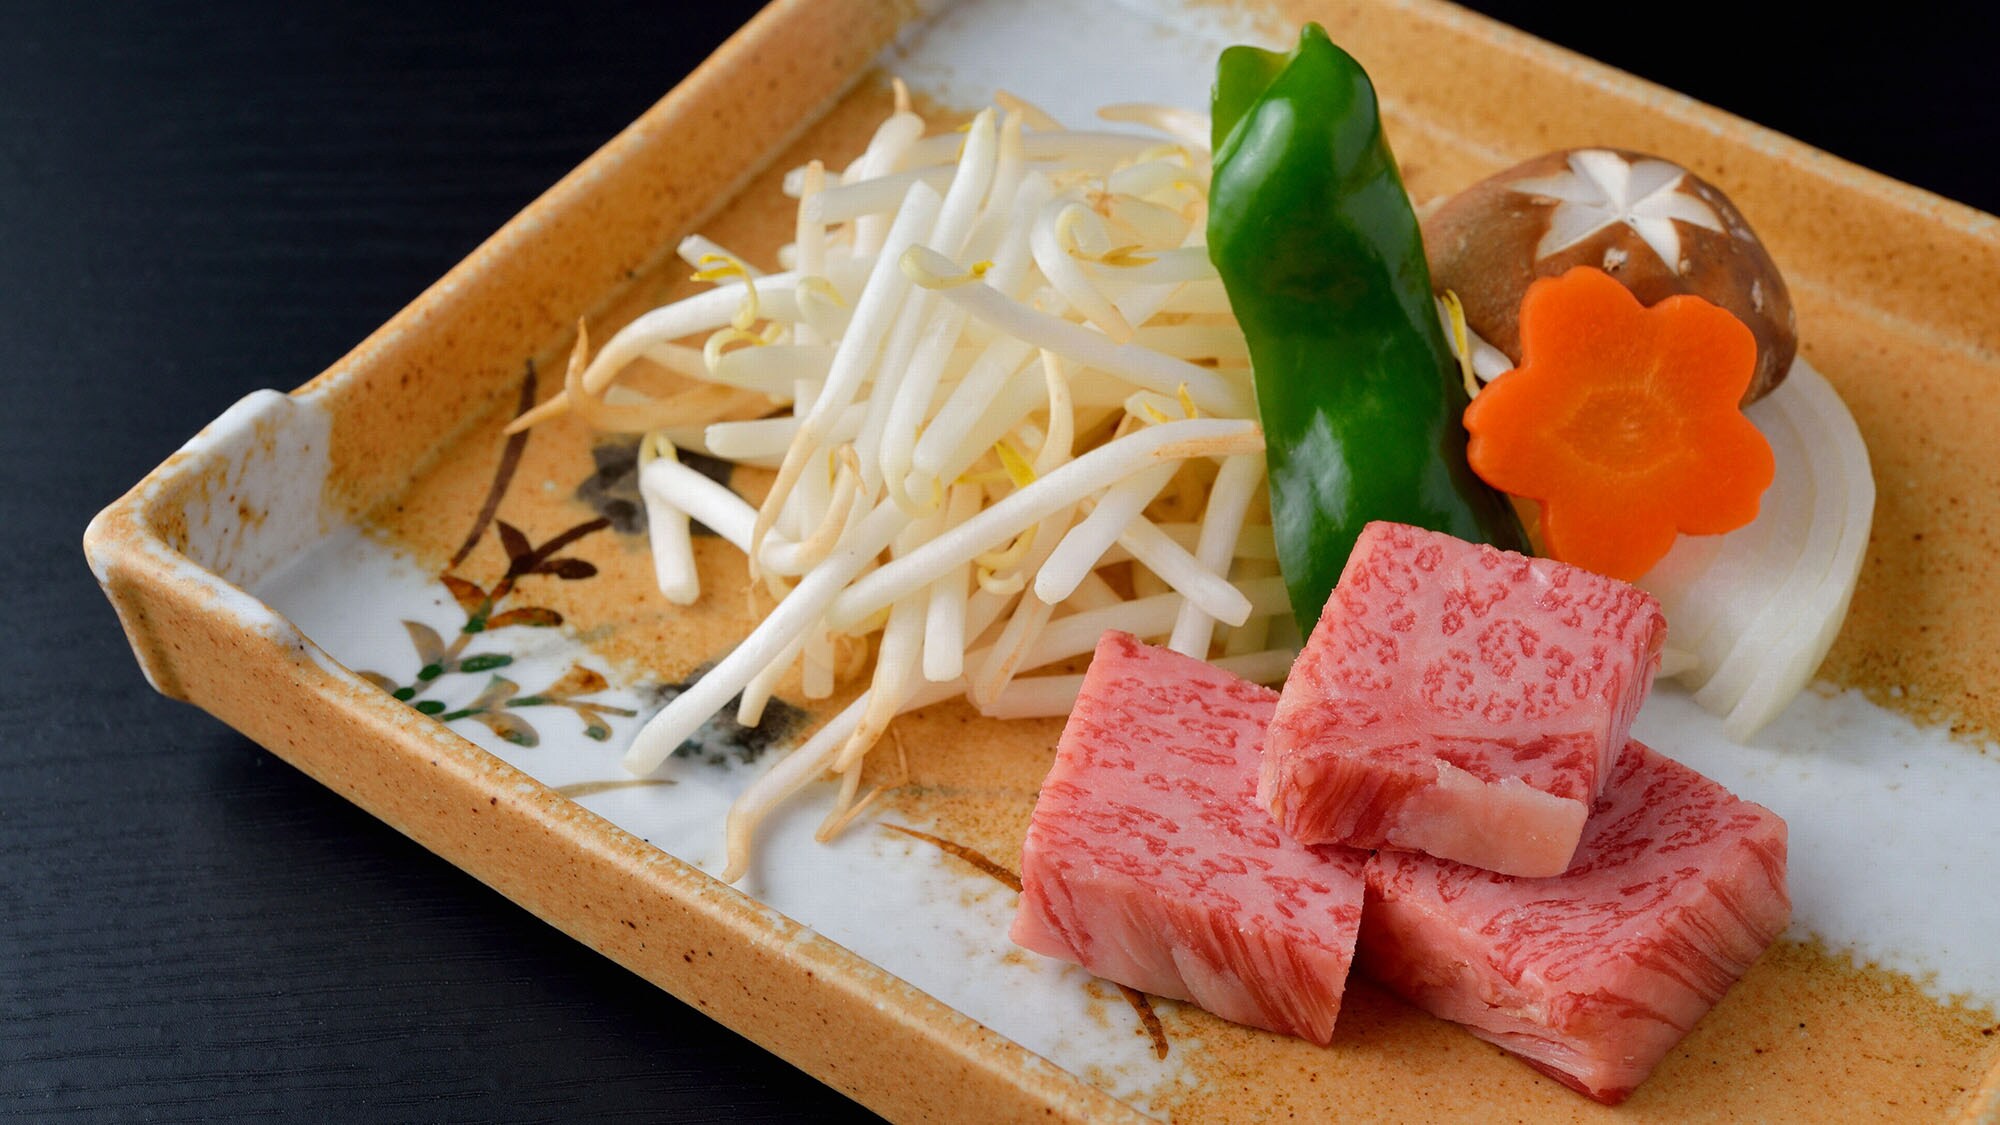 ・松阪牛是三重县引以为豪的国产牛肉的最高品牌。